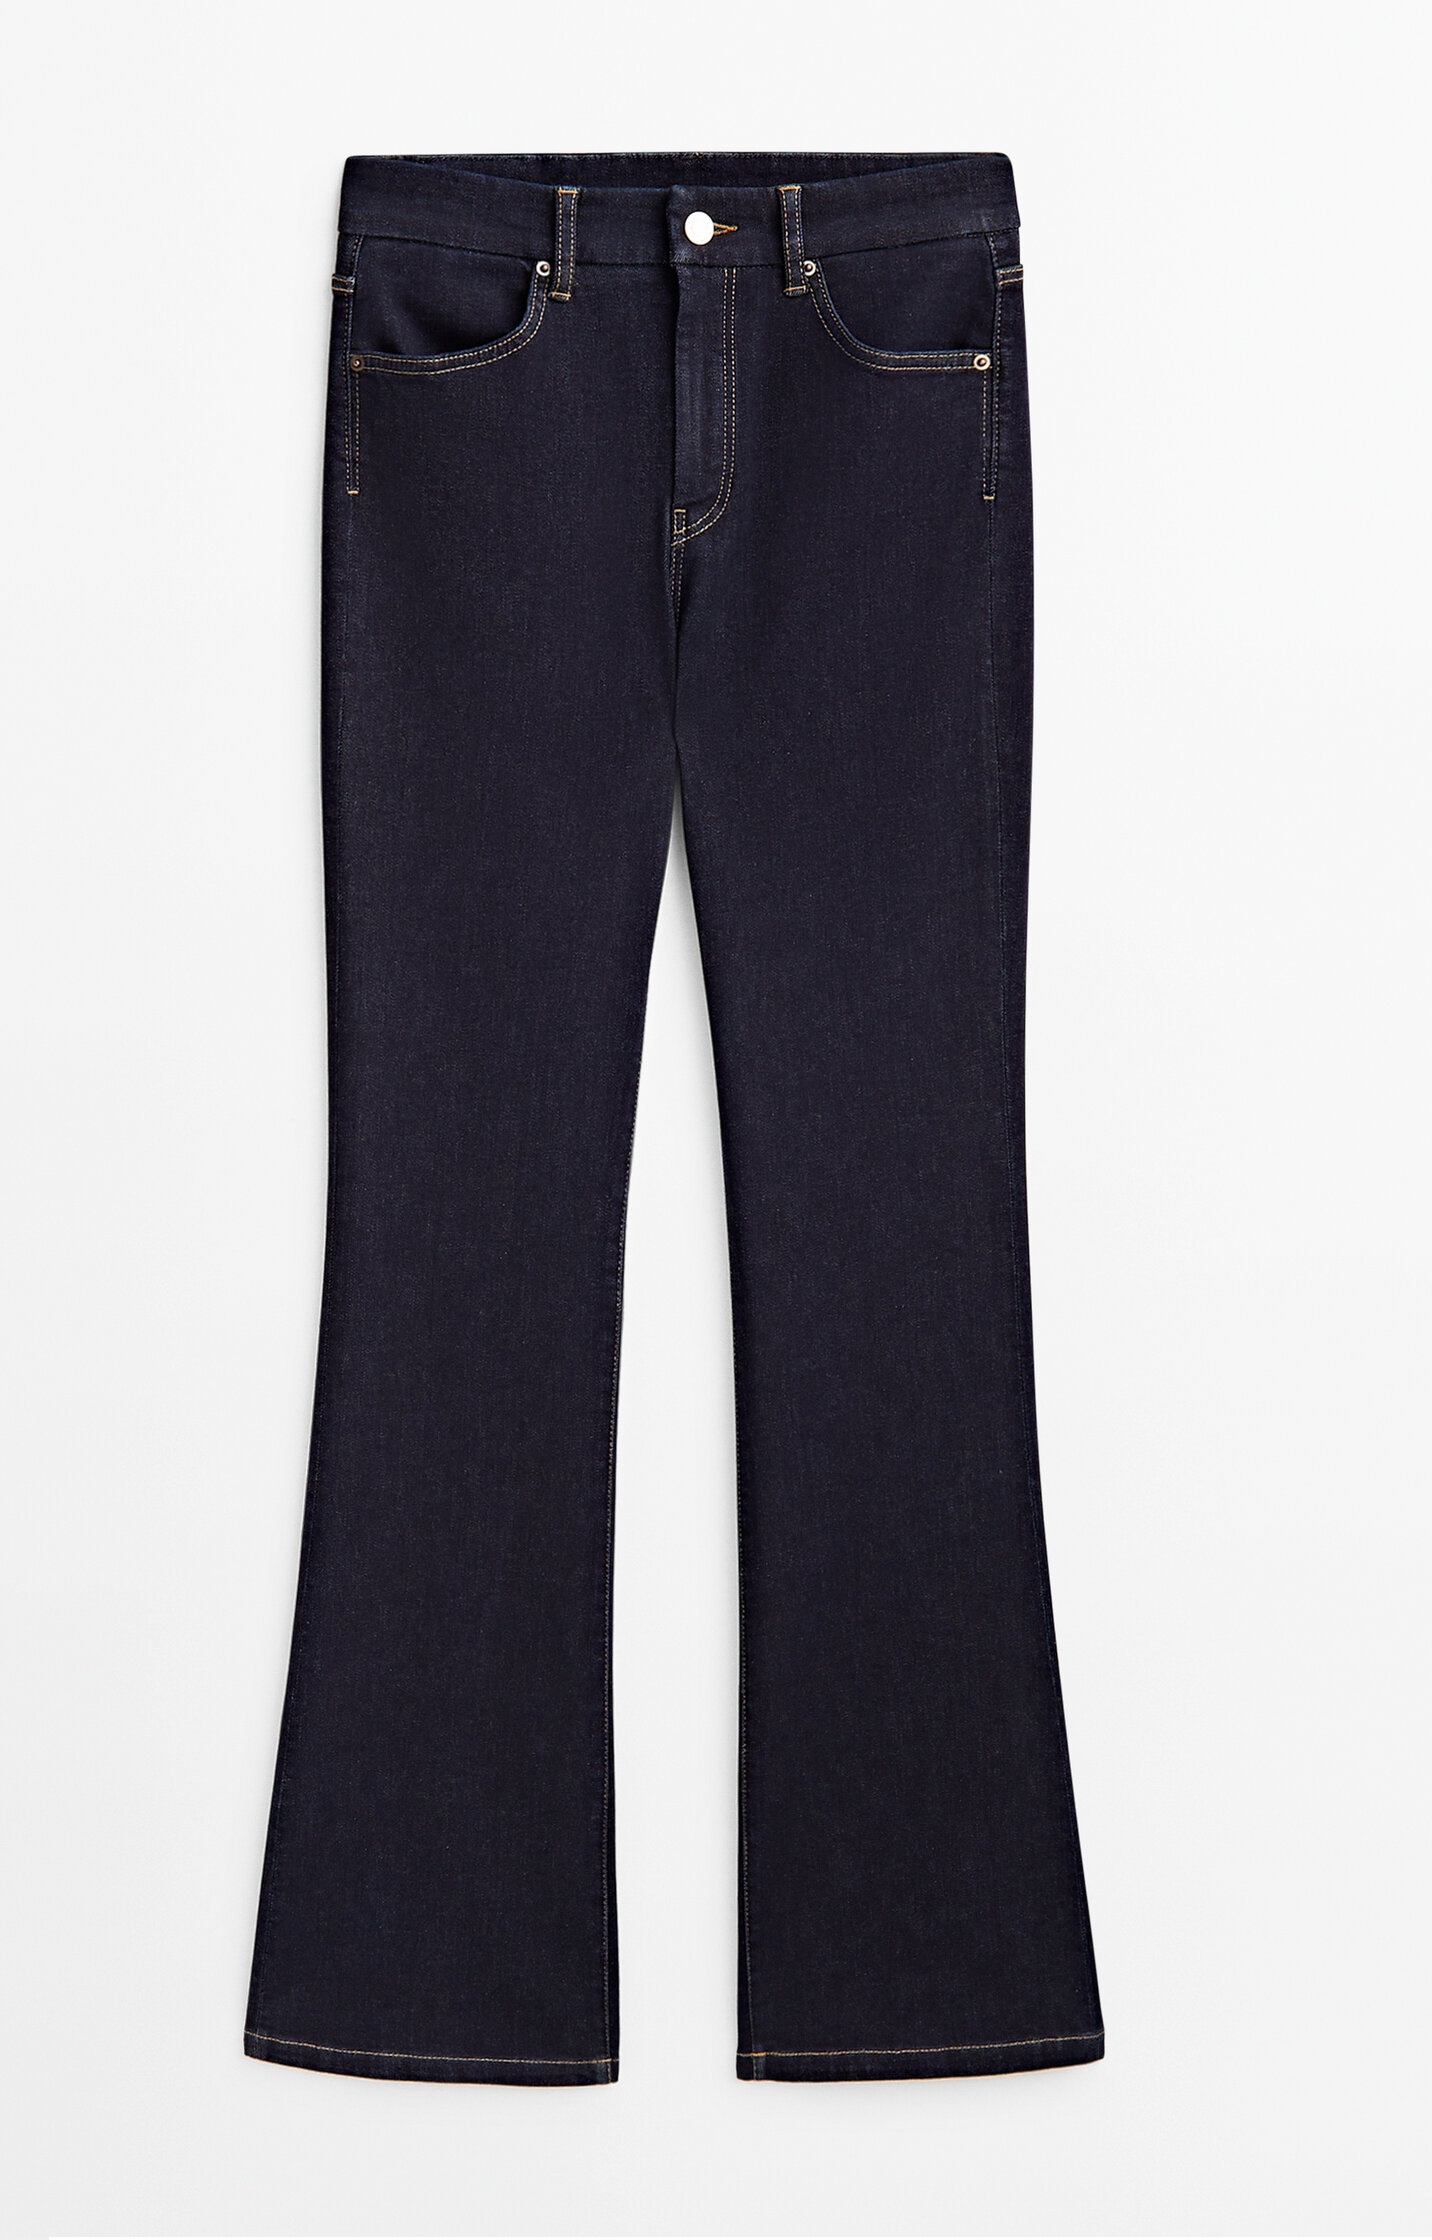 Джинсы Massimo Dutti Skinny Flare Fit High-waist, темно-синий джинсы расклешенные с высокой посадкой xl синий